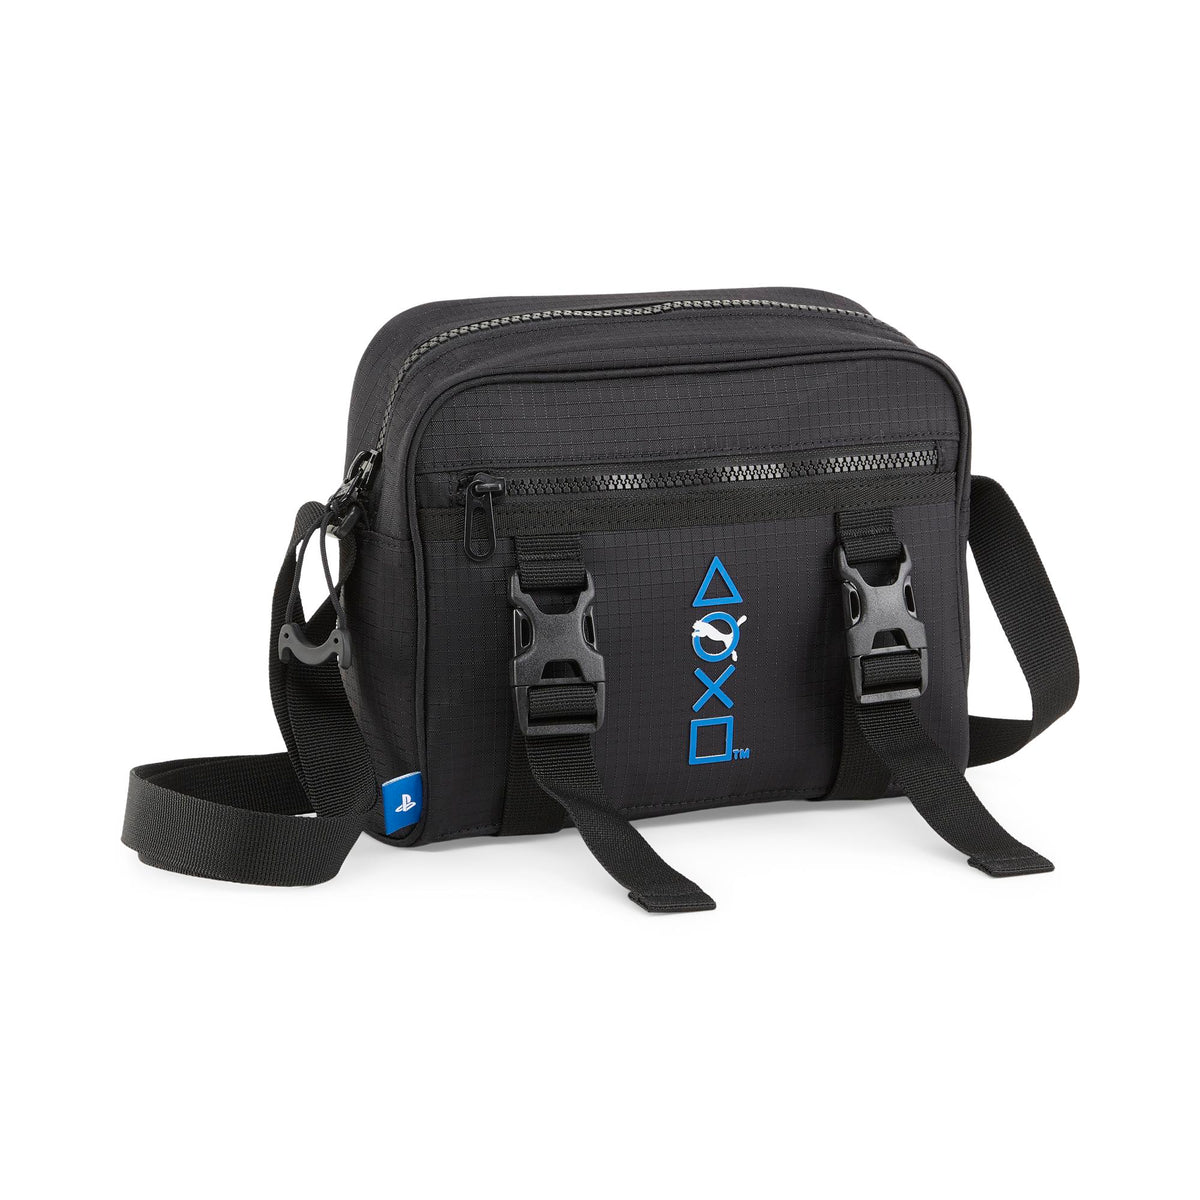 Puma x Playstation Crossbody Bag "Black"